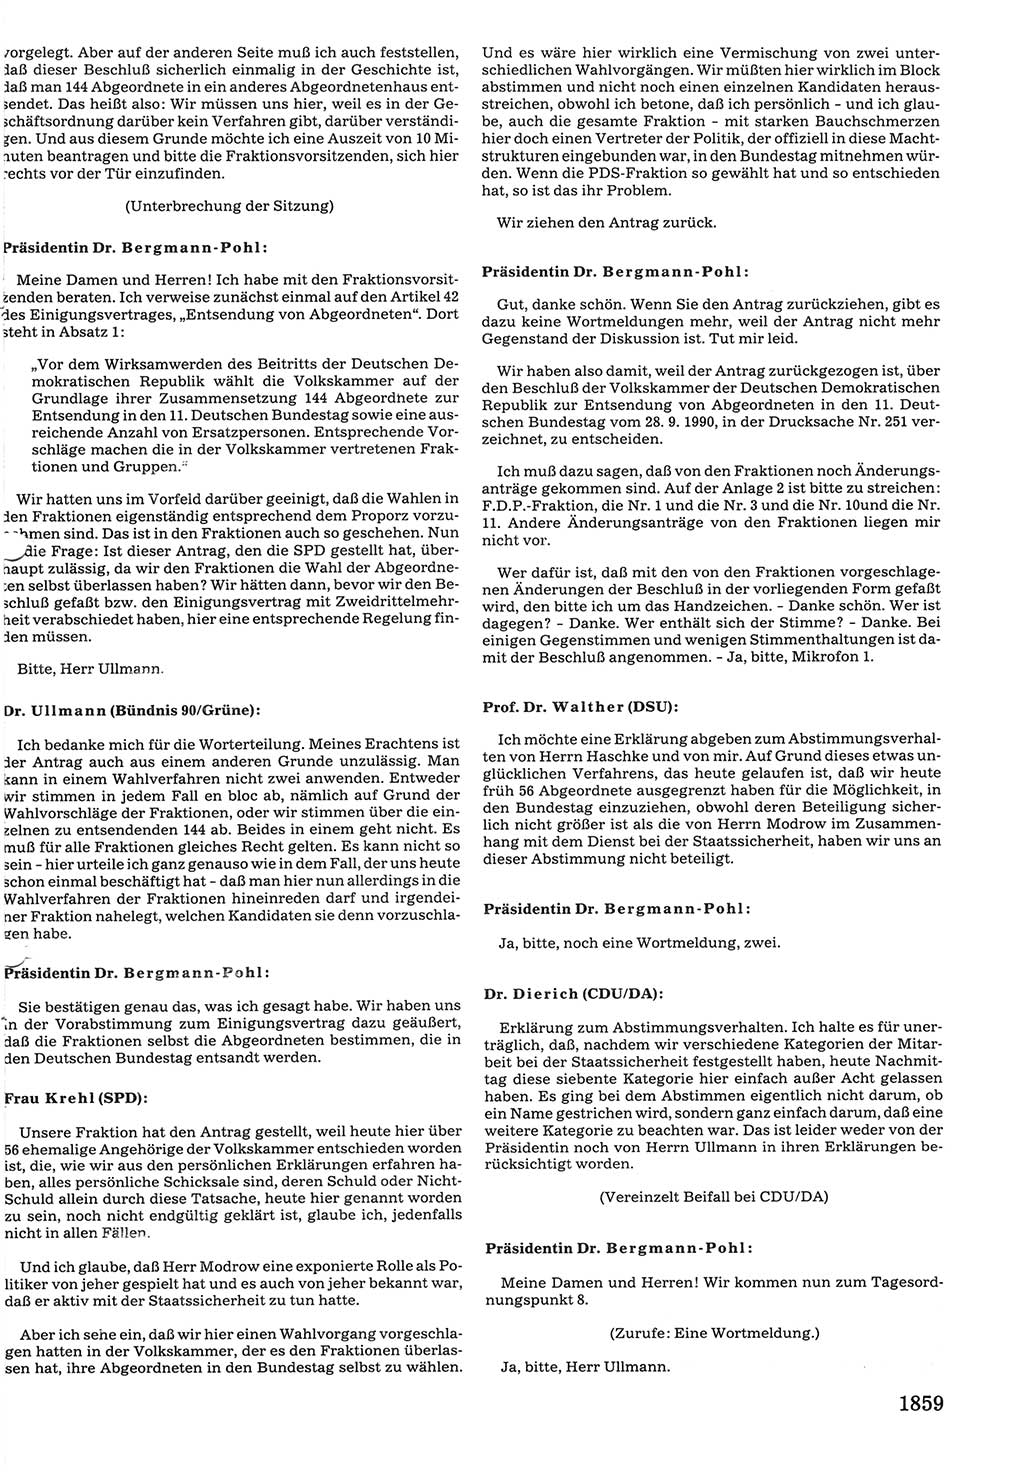 Tagungen der Volkskammer (VK) der Deutschen Demokratischen Republik (DDR), 10. Wahlperiode 1990, Seite 1859 (VK. DDR 10. WP. 1990, Prot. Tg. 1-38, 5.4.-2.10.1990, S. 1859)